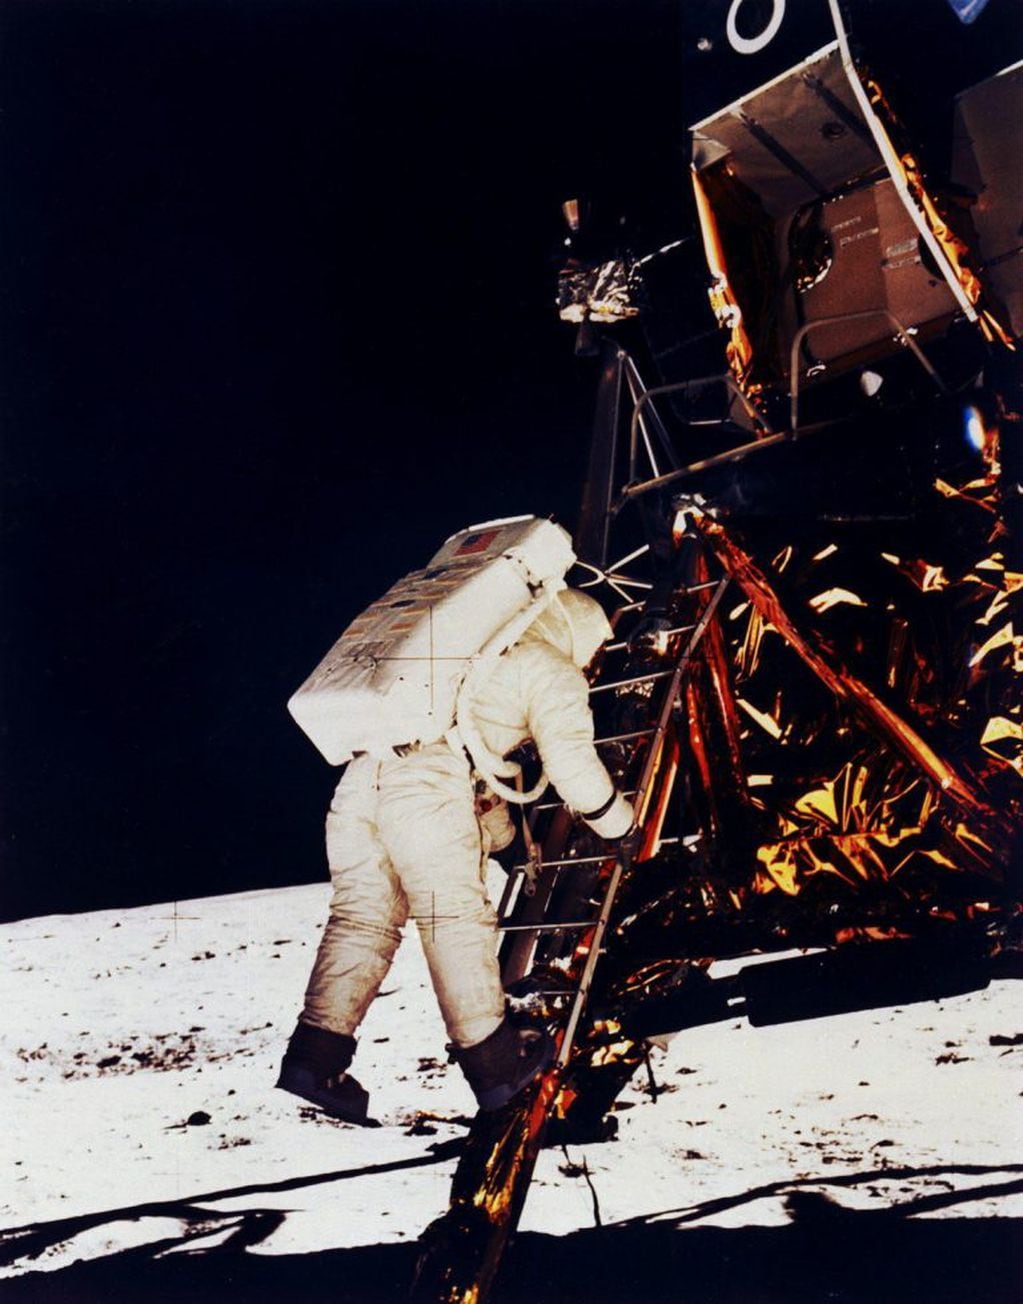 Aldrin, fotografiado por Armstrong, mientras baja las escaleras del Módulo Lunar "Eagle". 600 millones de espectadores tuvo la transmisión televisiva en vivo desde la Luna, cuando la población mundial era en ese momento de poco más de 3 mil millones de habitantes.